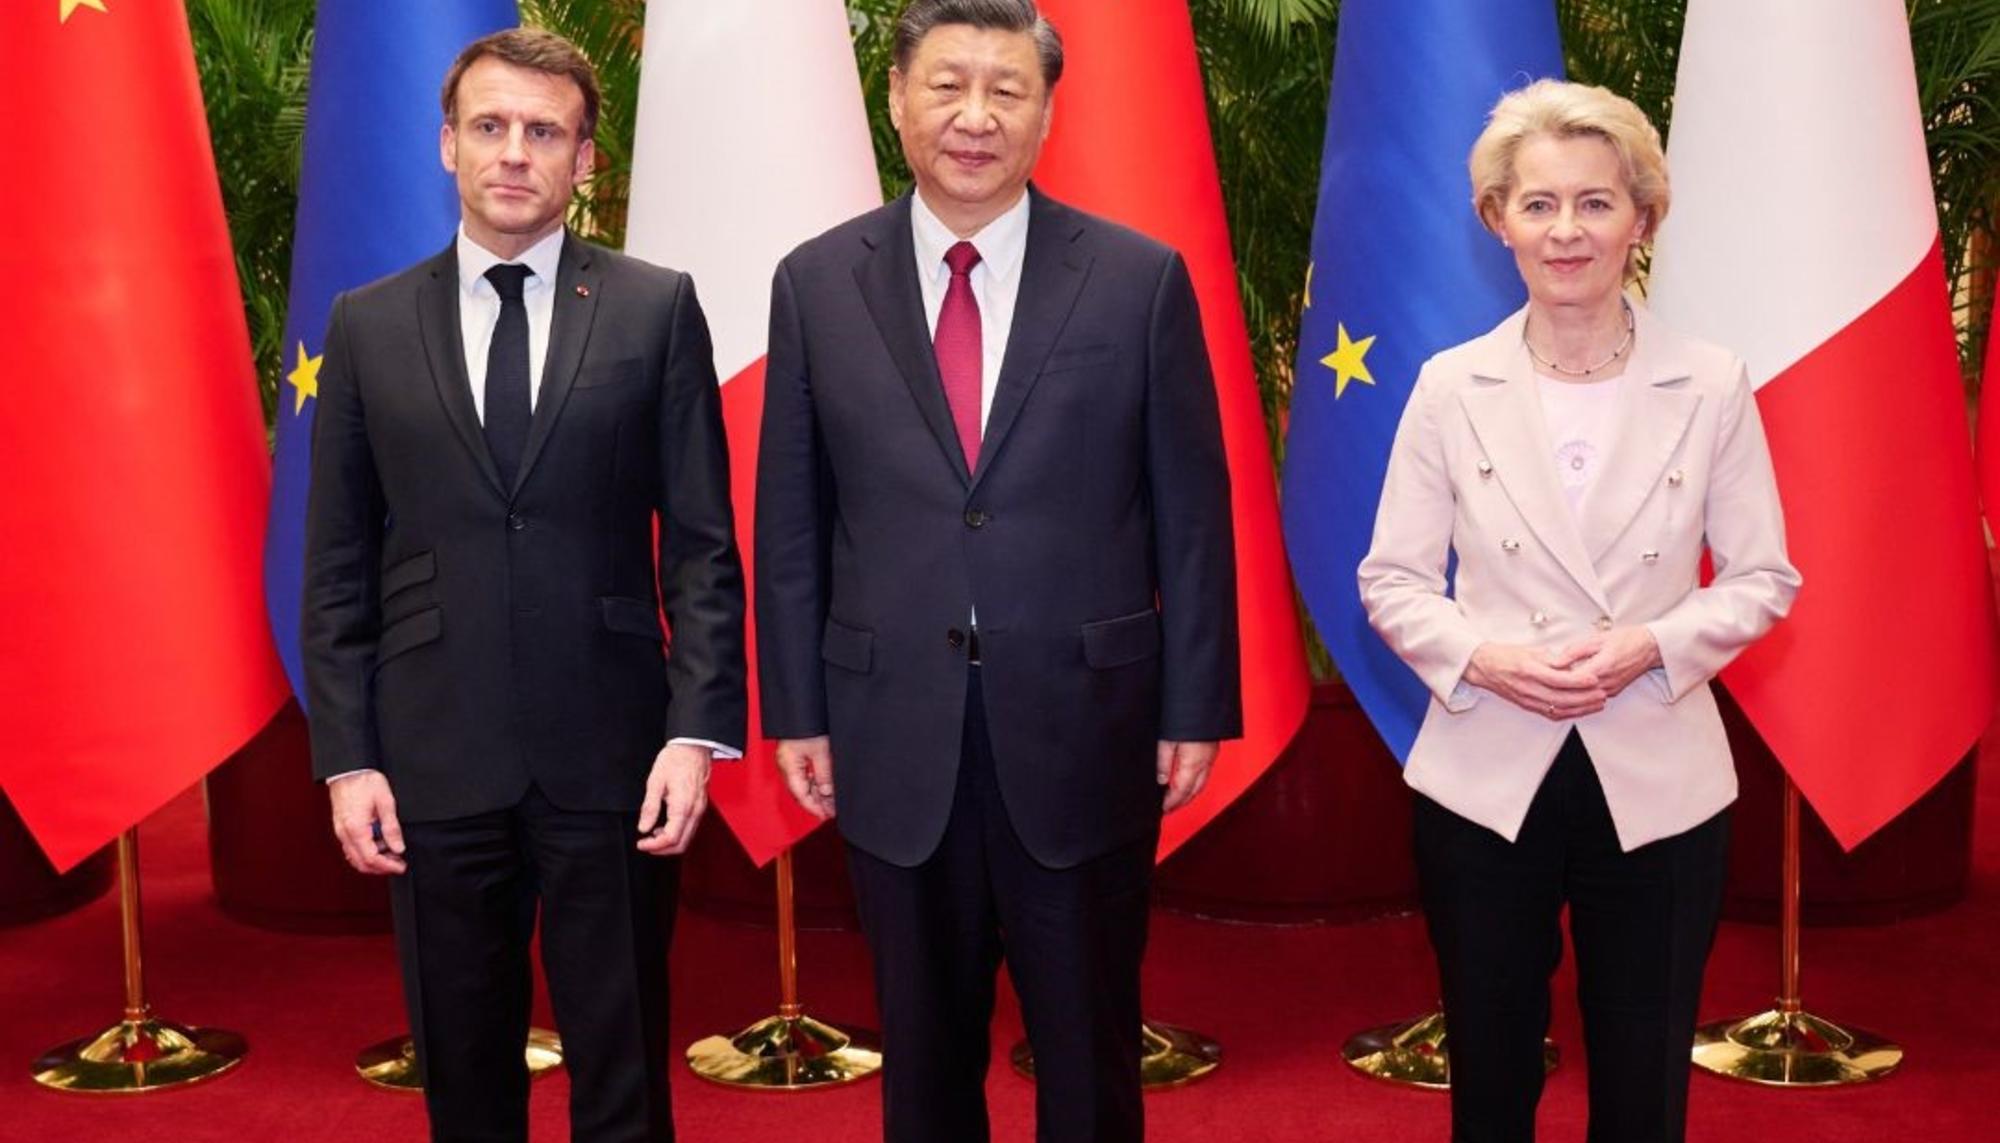 Macron, Xi, von der leyen